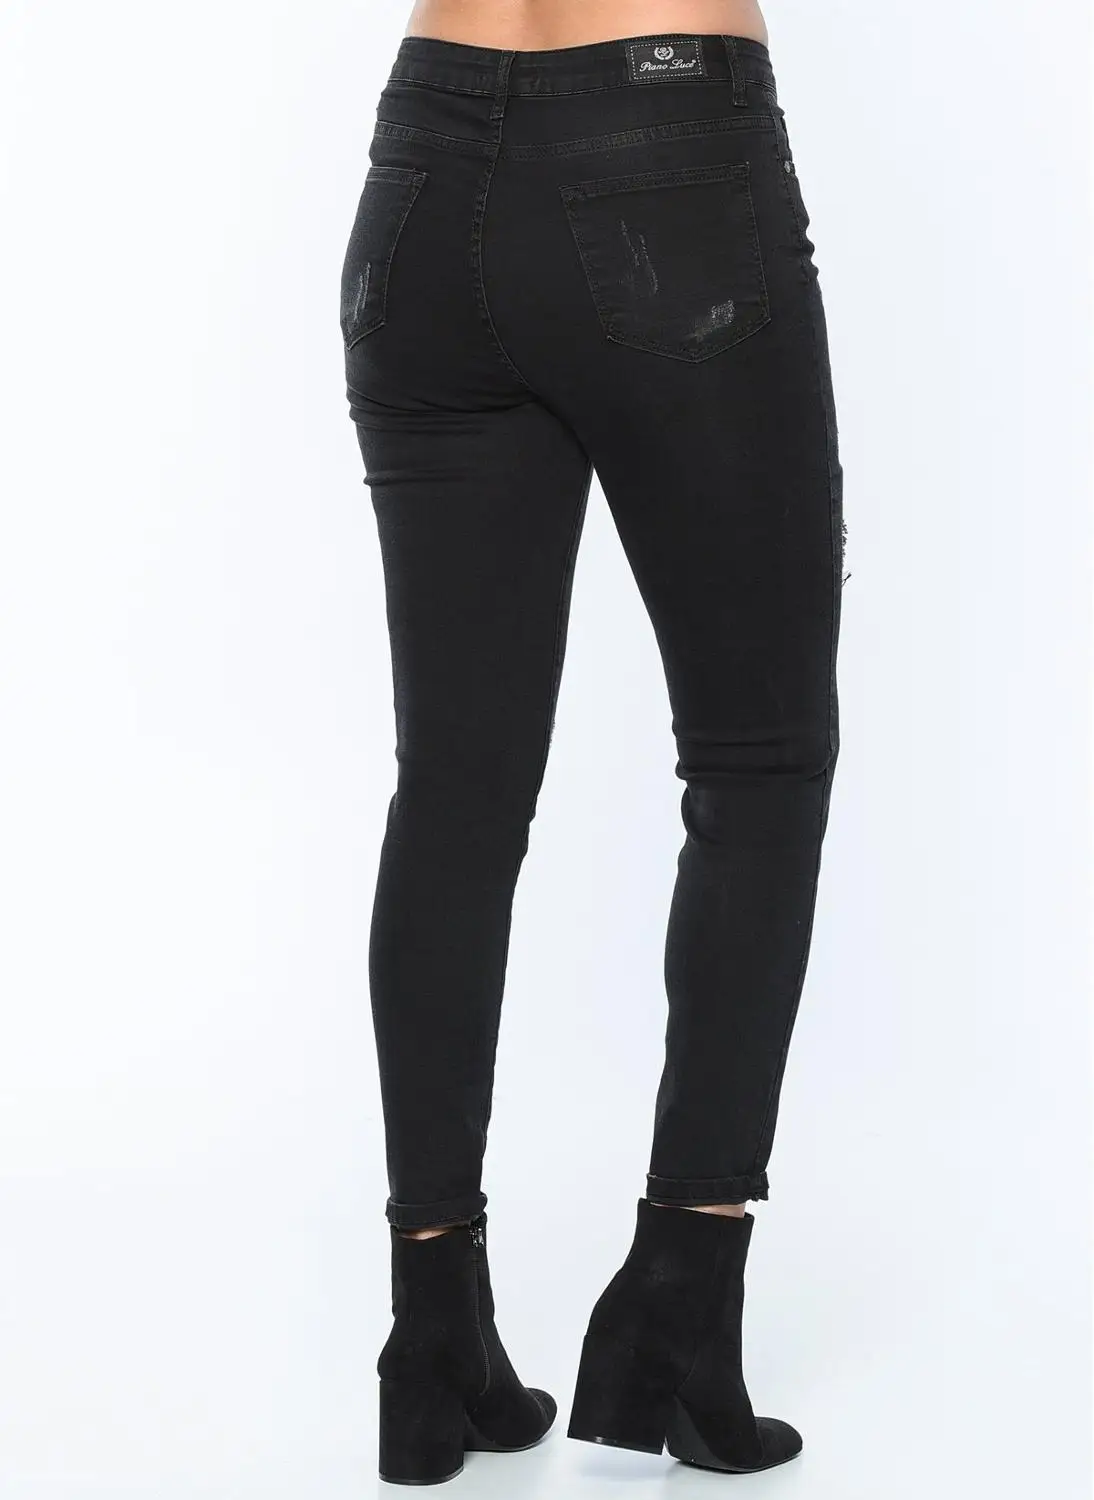 Женские джинсы с блестками, черные, размера плюс, 49108 от AliExpress RU&CIS NEW